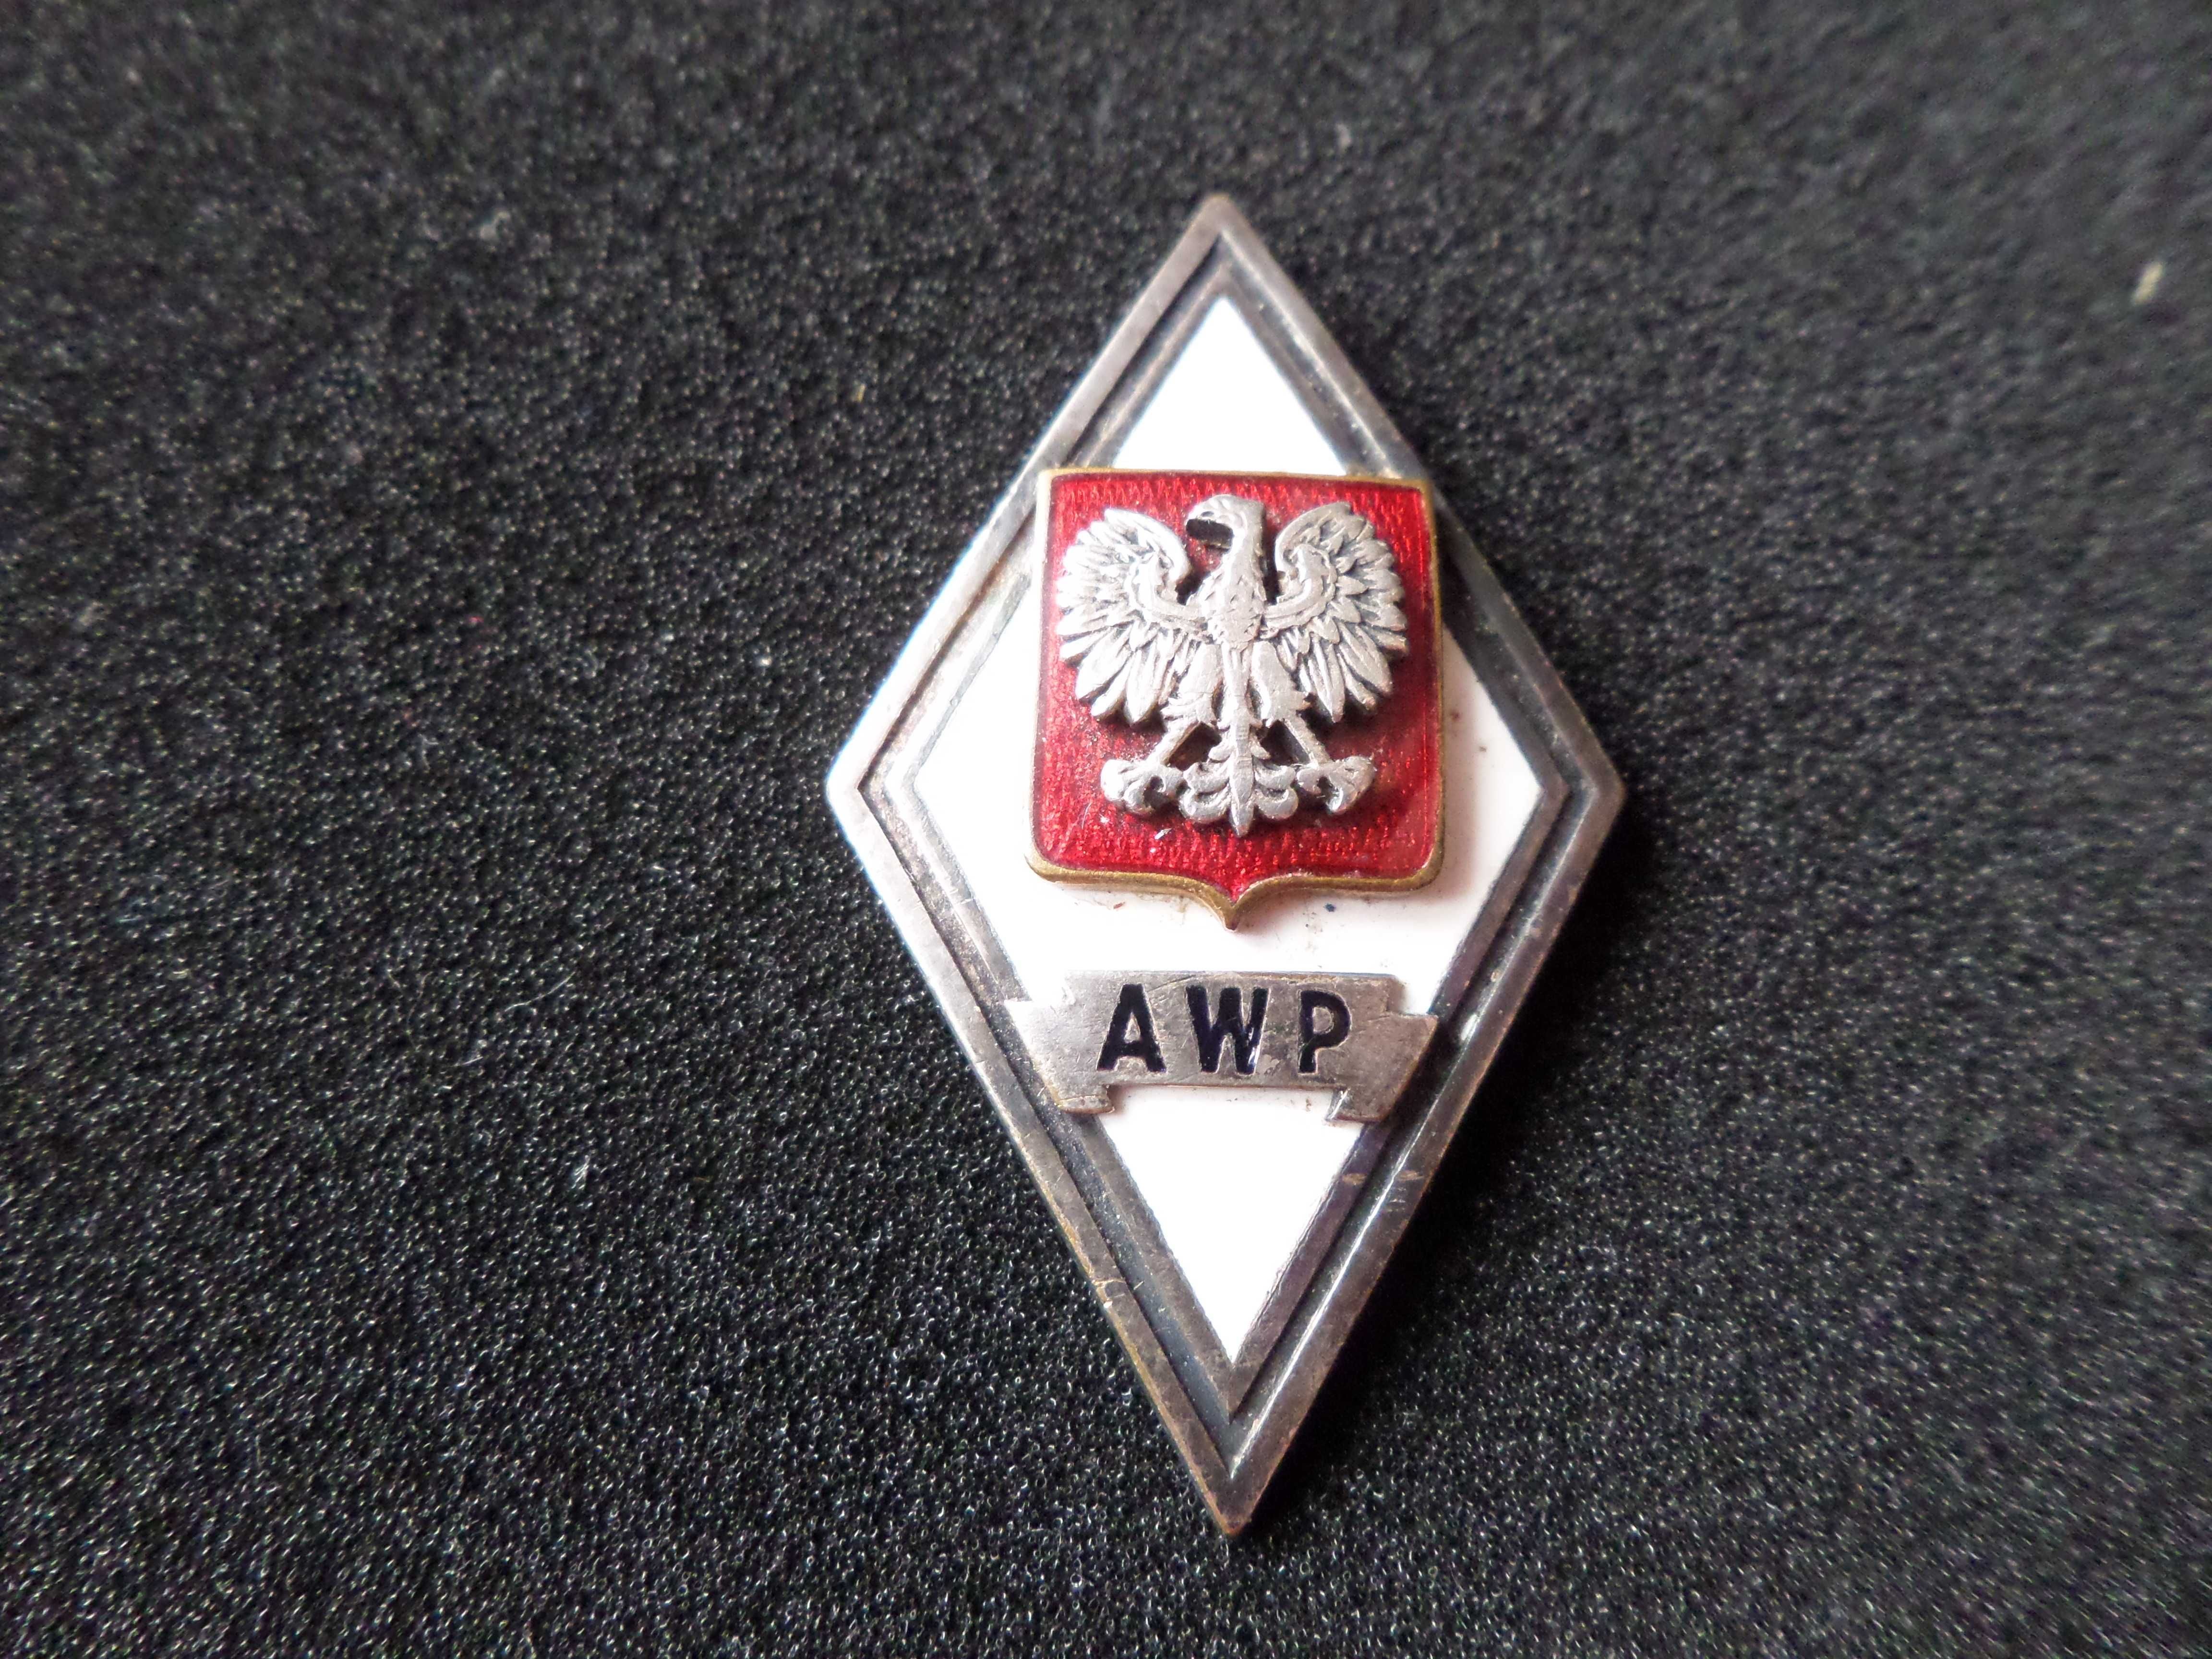 AWP - Akademia Wojskowo Polityczna